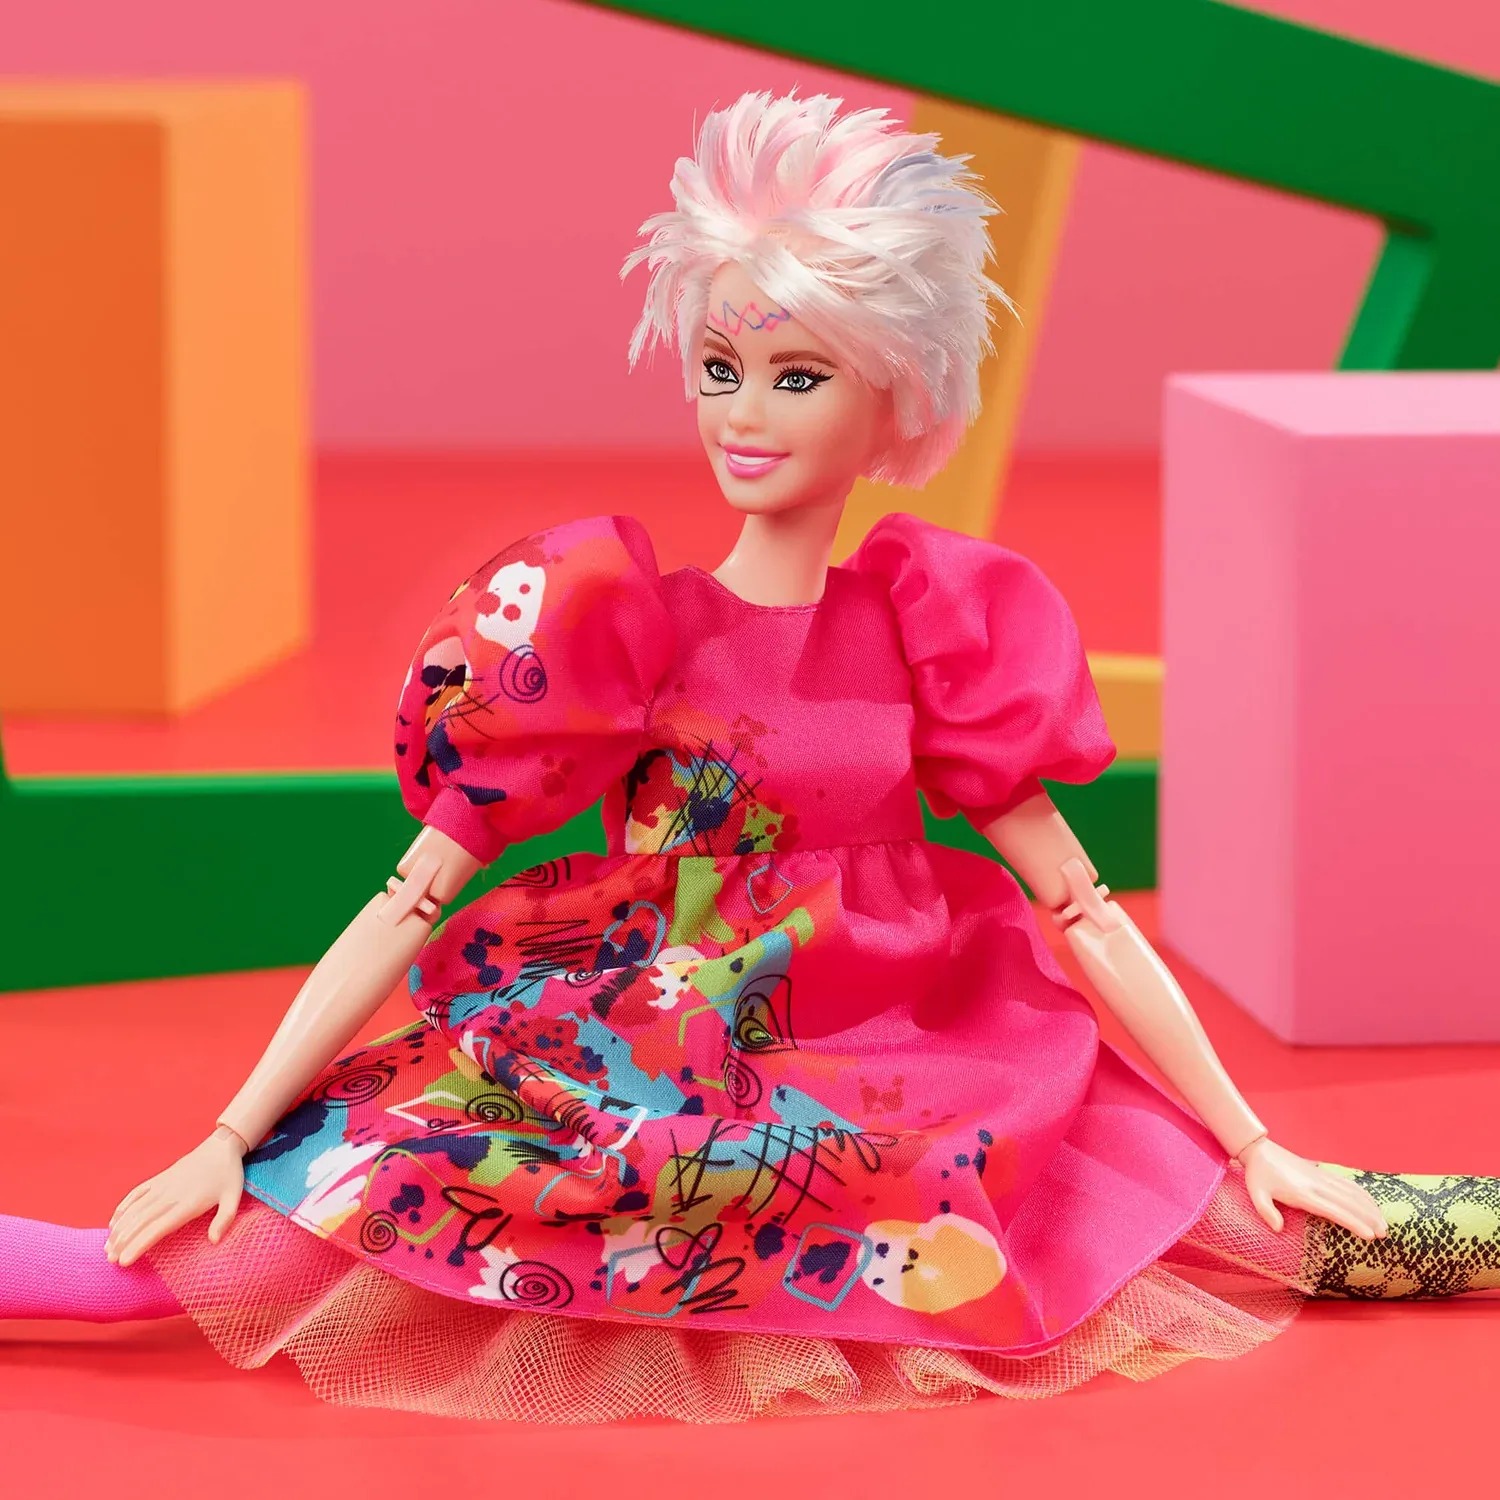 ¿Qué precio tendrá la muñeca Barbie rara?